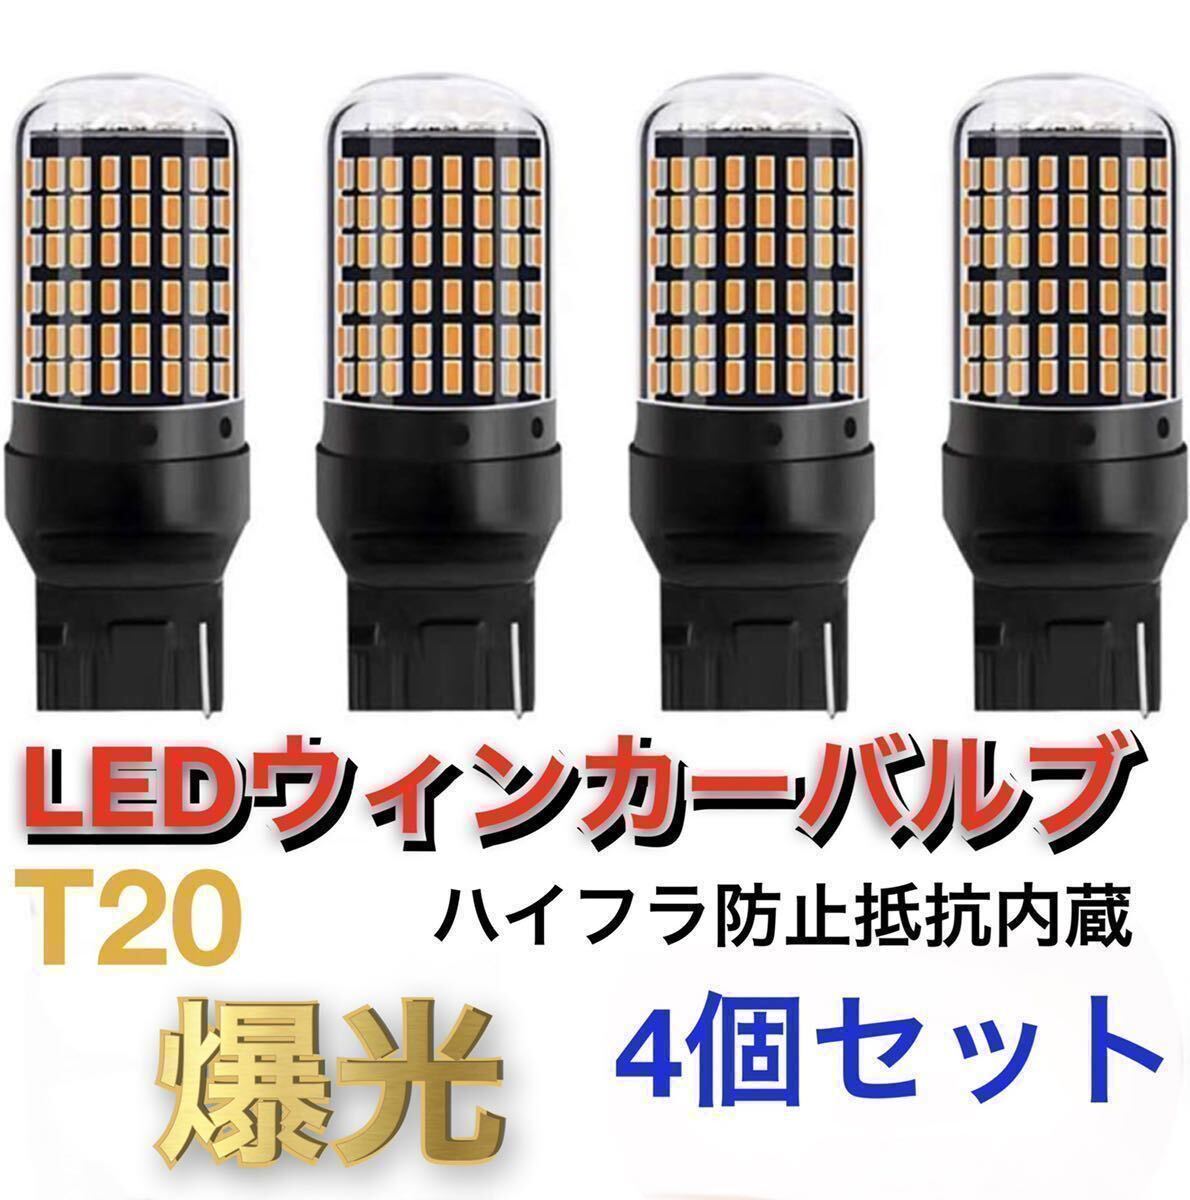 新製品 LED T20 ウインカー オレンジ色 ハイフラ防止抵抗内蔵 ピンチ部違い対応 4個セット アンバー 12v LEDバルブ _画像1